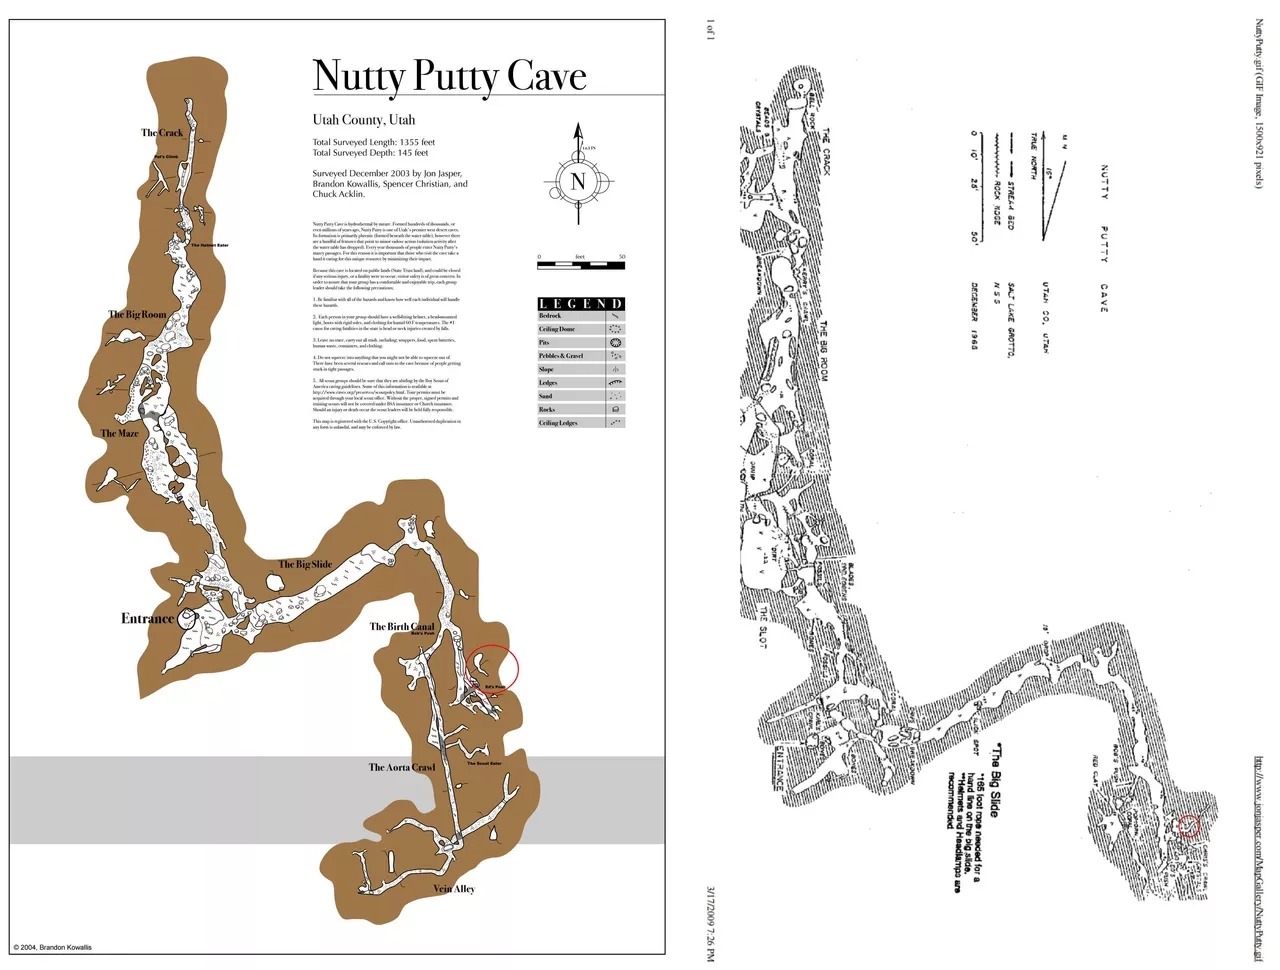 Nut Putty: Hang động nổi tiếng nhất nước Mỹ và cái chết của một bác sĩ - Ảnh 2.